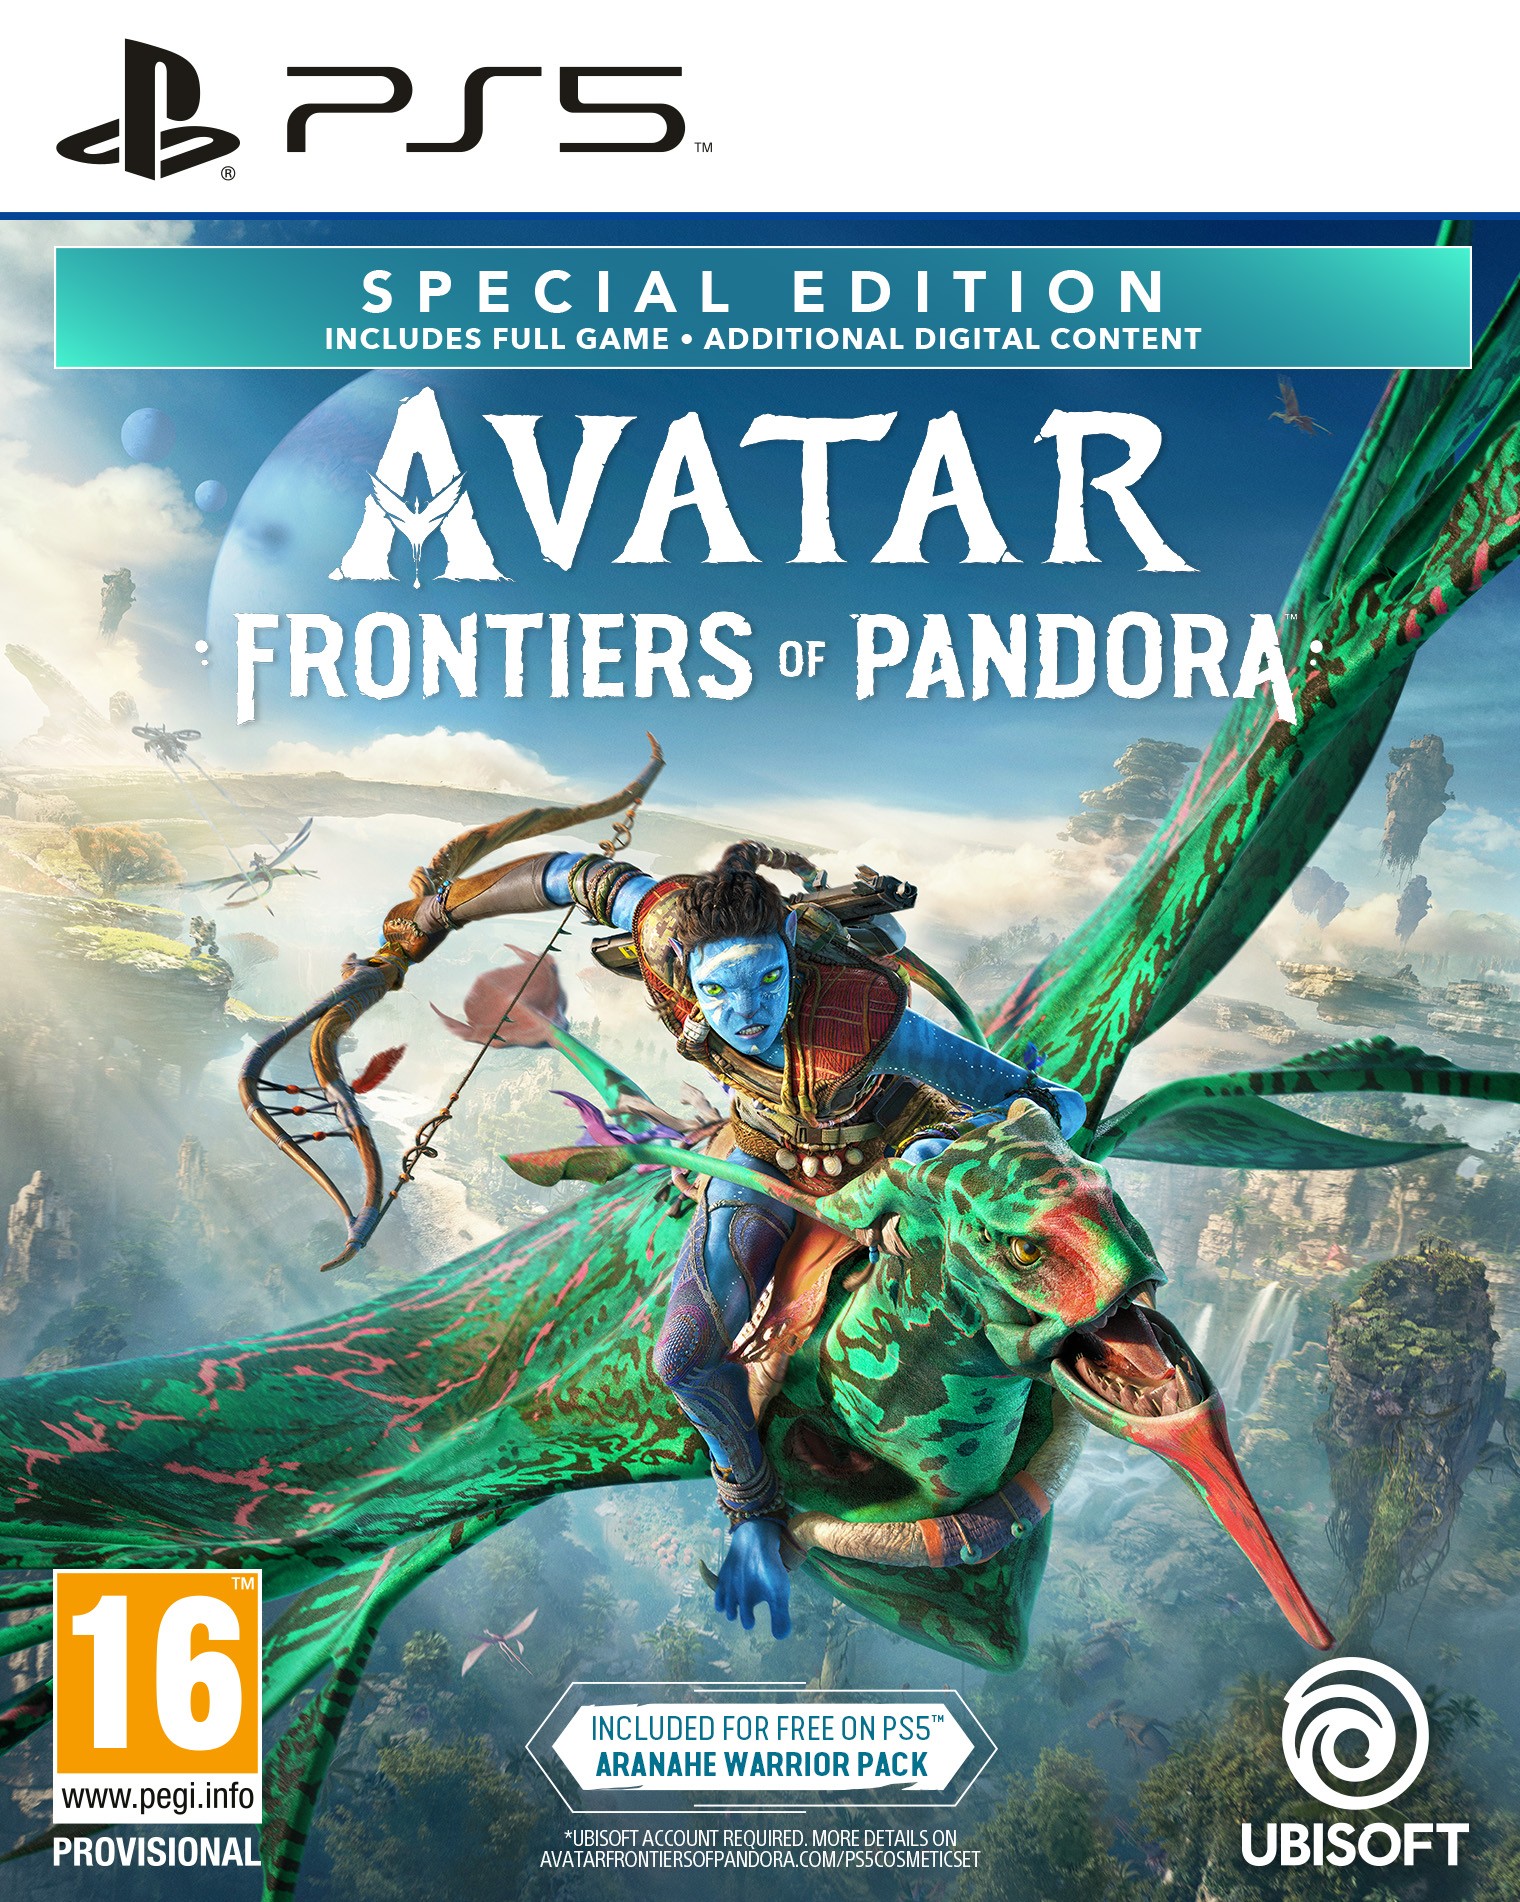 Avatar: Frontiers of Pandora Special Edition + Preorder Bonus